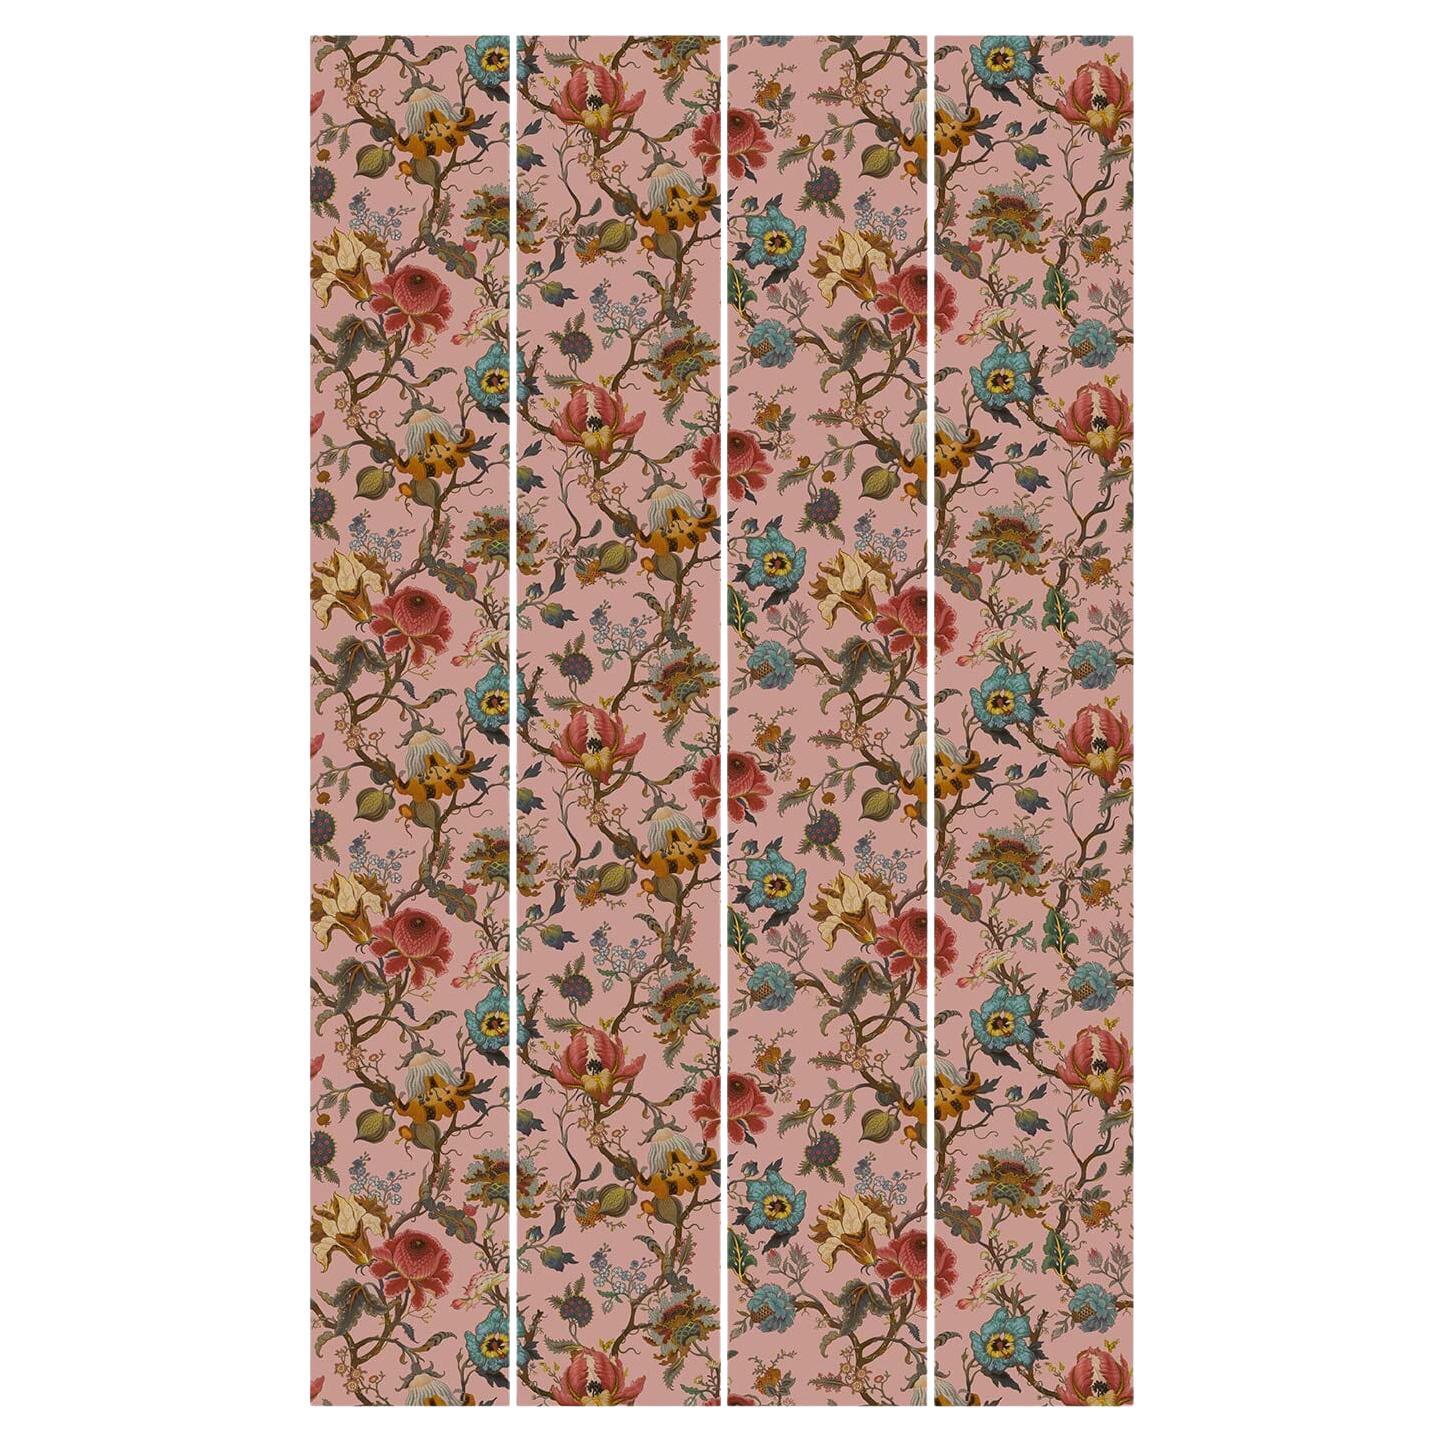 Bringen Sie ARTEMIS in Ihr Zuhause mit dieser kunstvollen Tapete, die mit aufwendig gemalten Wildblumen geprägt ist. Der rosafarbene Farbton ist wunderschön warm und passt in jede Umgebung. Inspiriert von Diana Vreelands berühmtem 